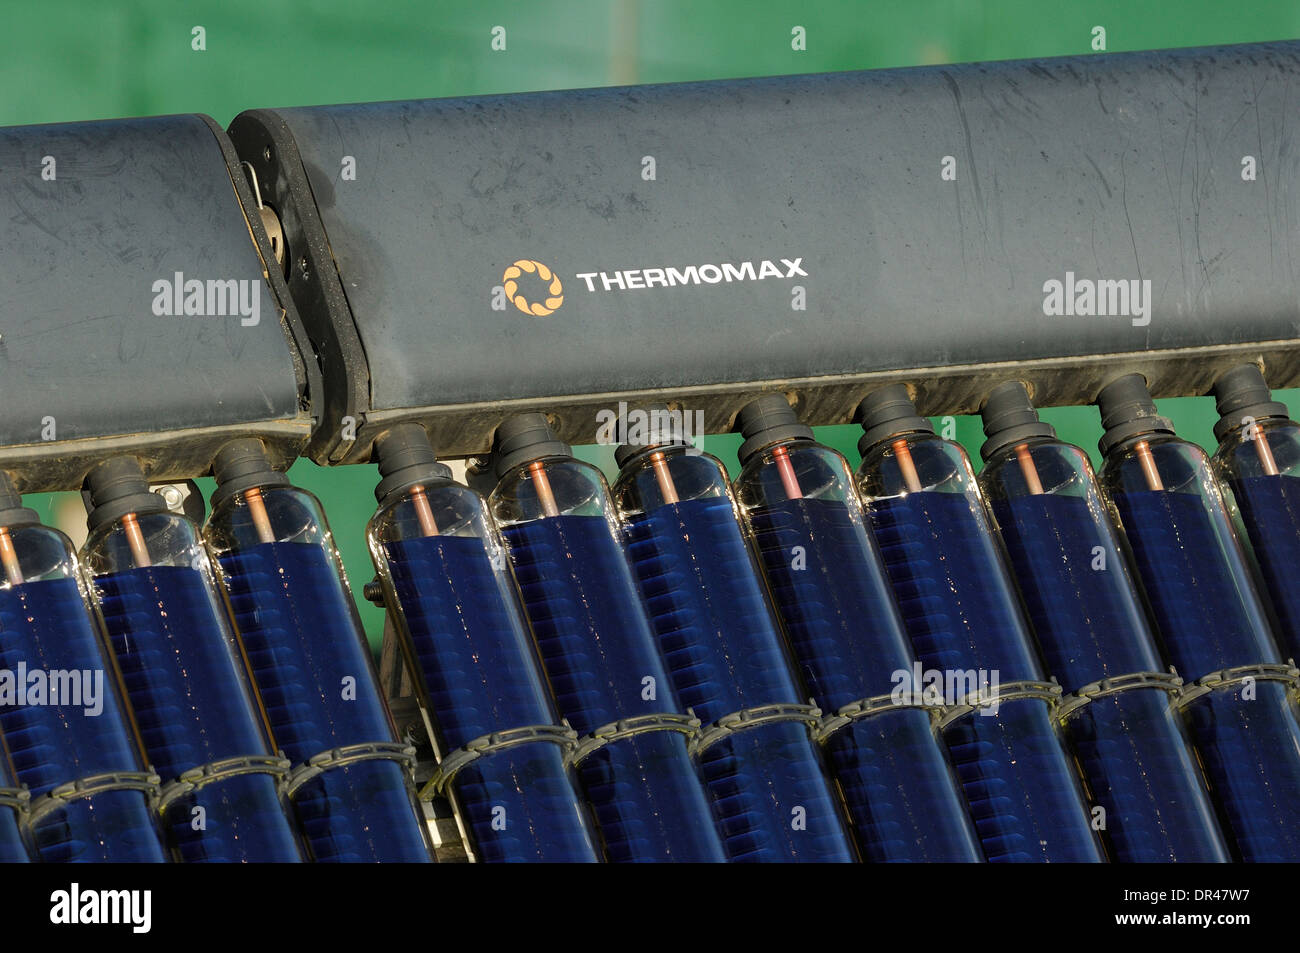 Riscaldamento di acqua solare apparecchiature mediante termo-max Foto Stock